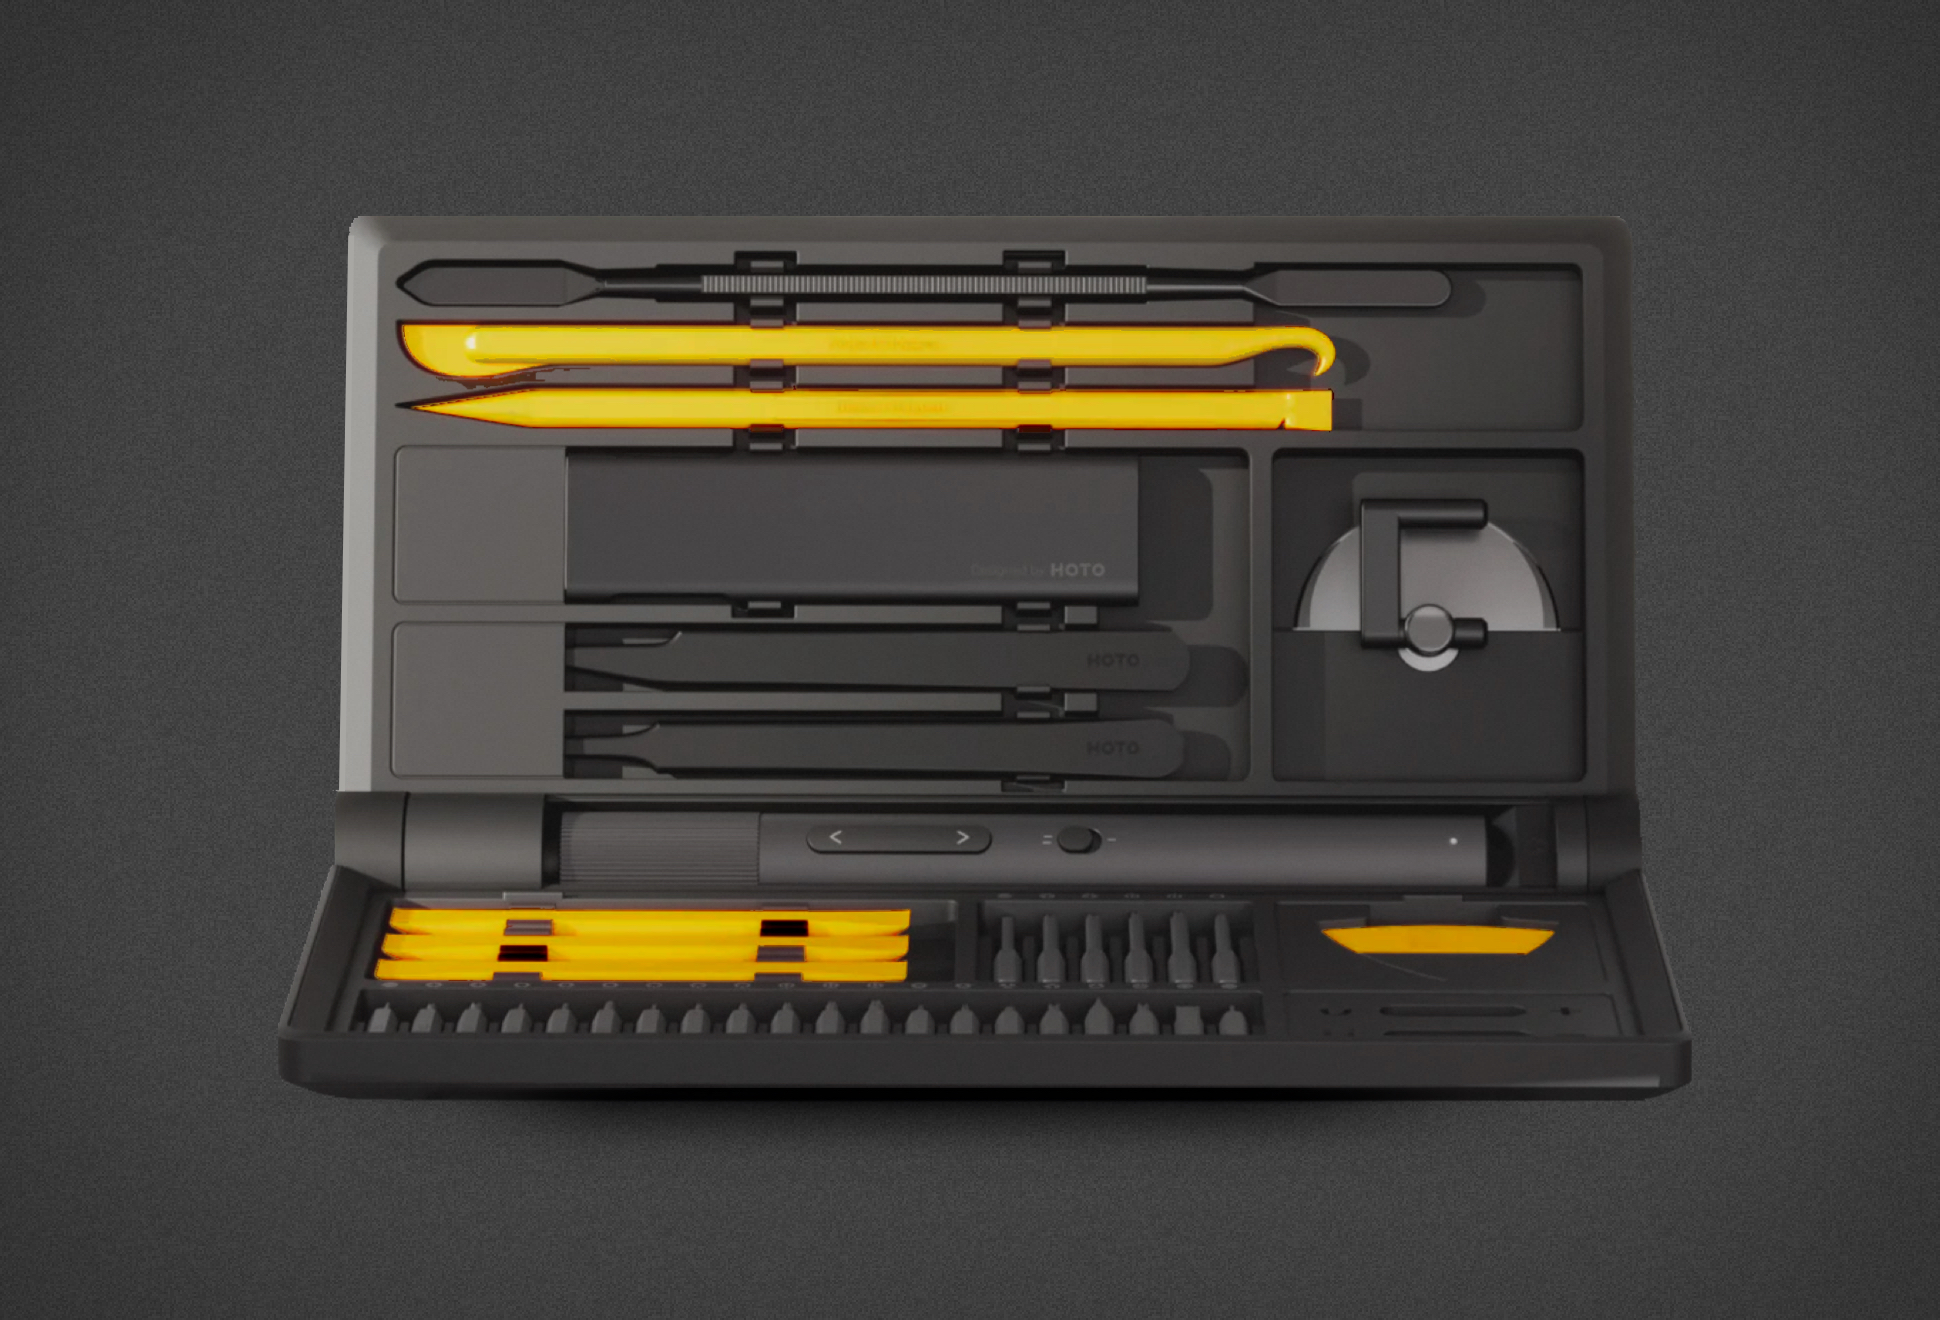 Hoto Precision Screwdriver Kit Pro | Image